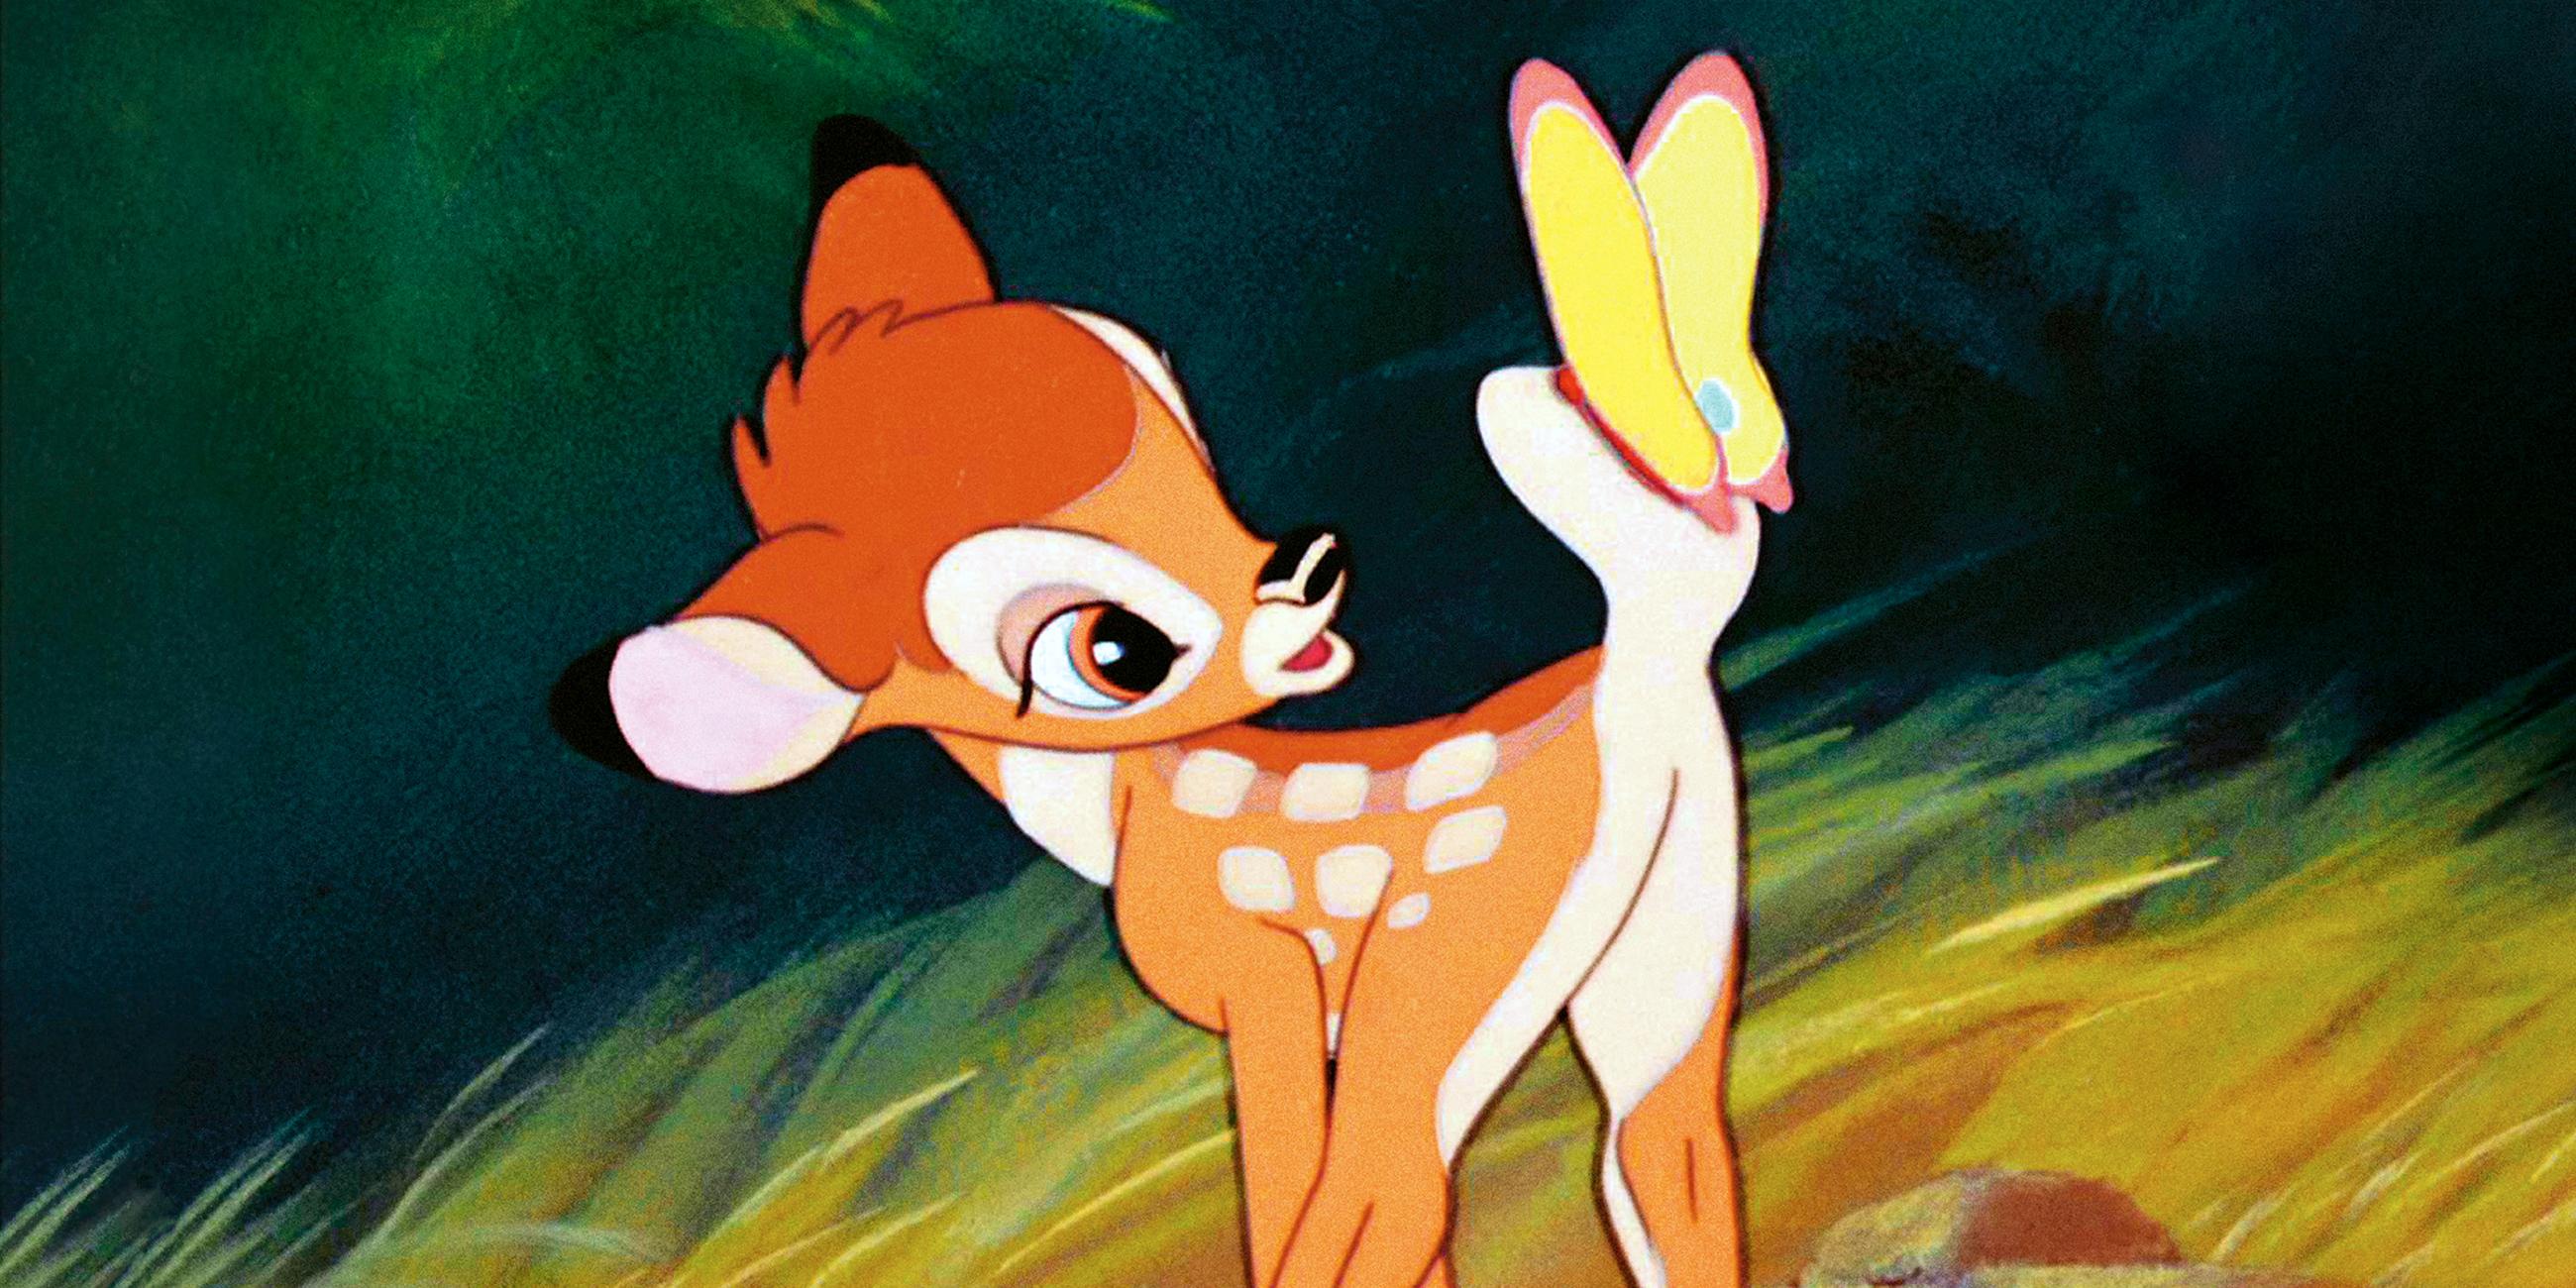 Die Zeichentrickfigur Bambi aus dem gleichnamigen Film von Disney aus dem Jahr 1942